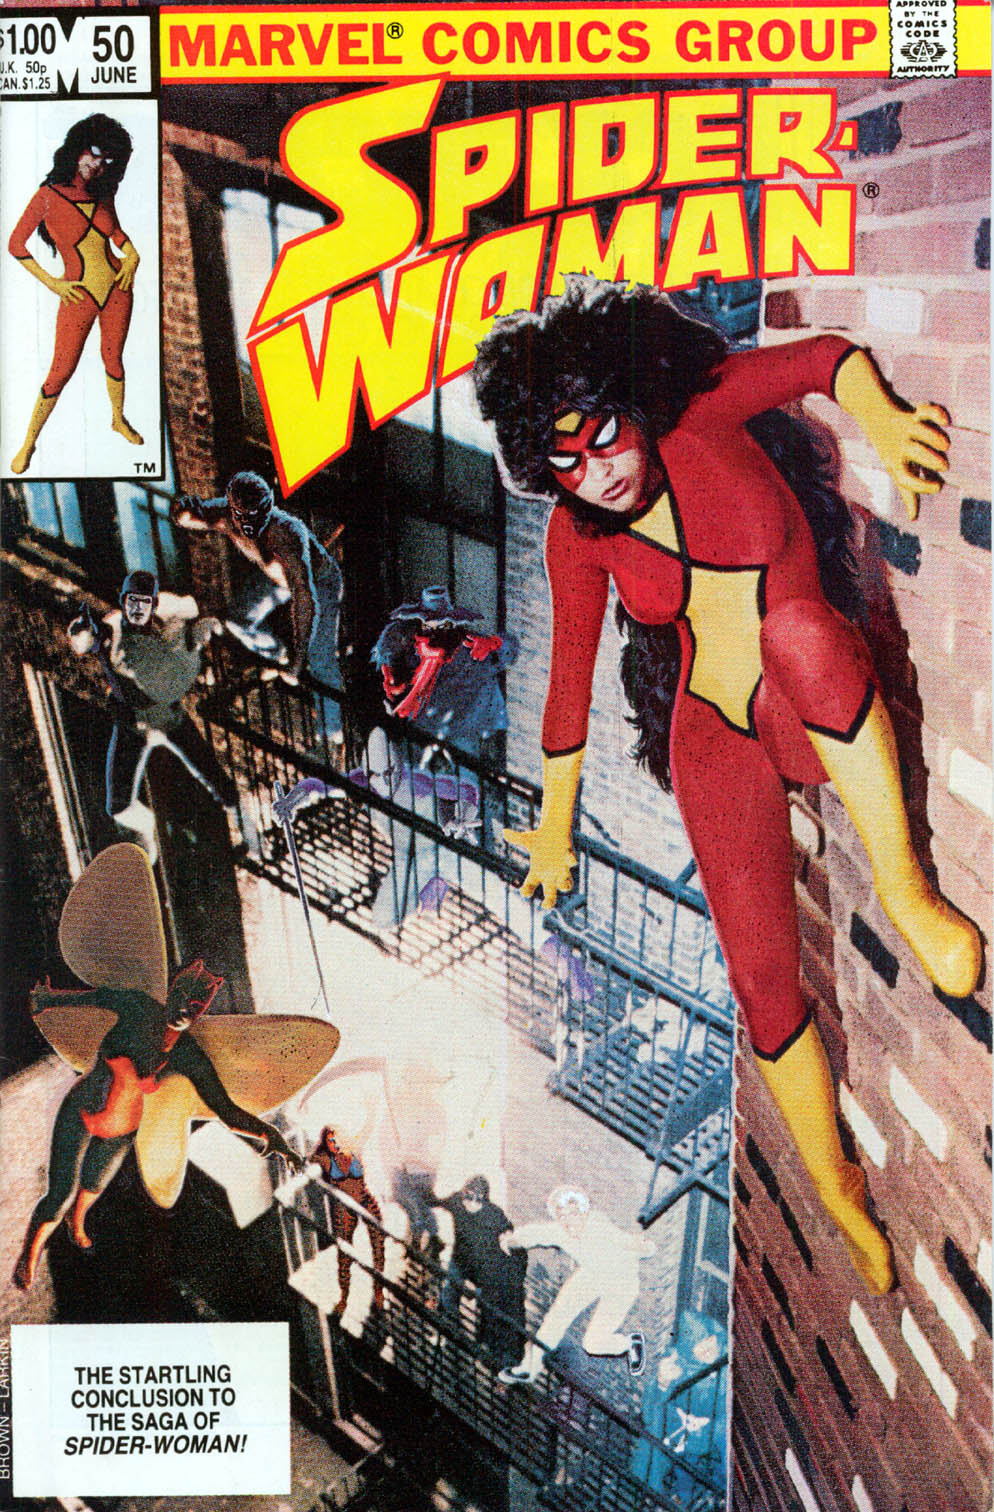 Portada realizada a través de un montaje fotográfico para Spider-Woman 50, vemos a Spider-Woman en una pared, mientras que un montón de personajes de la serie, sobre todo villanos, la acechan en el edificio de al lado.

En un recuadro abajo leemos: The Startling Conclusion to the Saga of Spider-Woman!